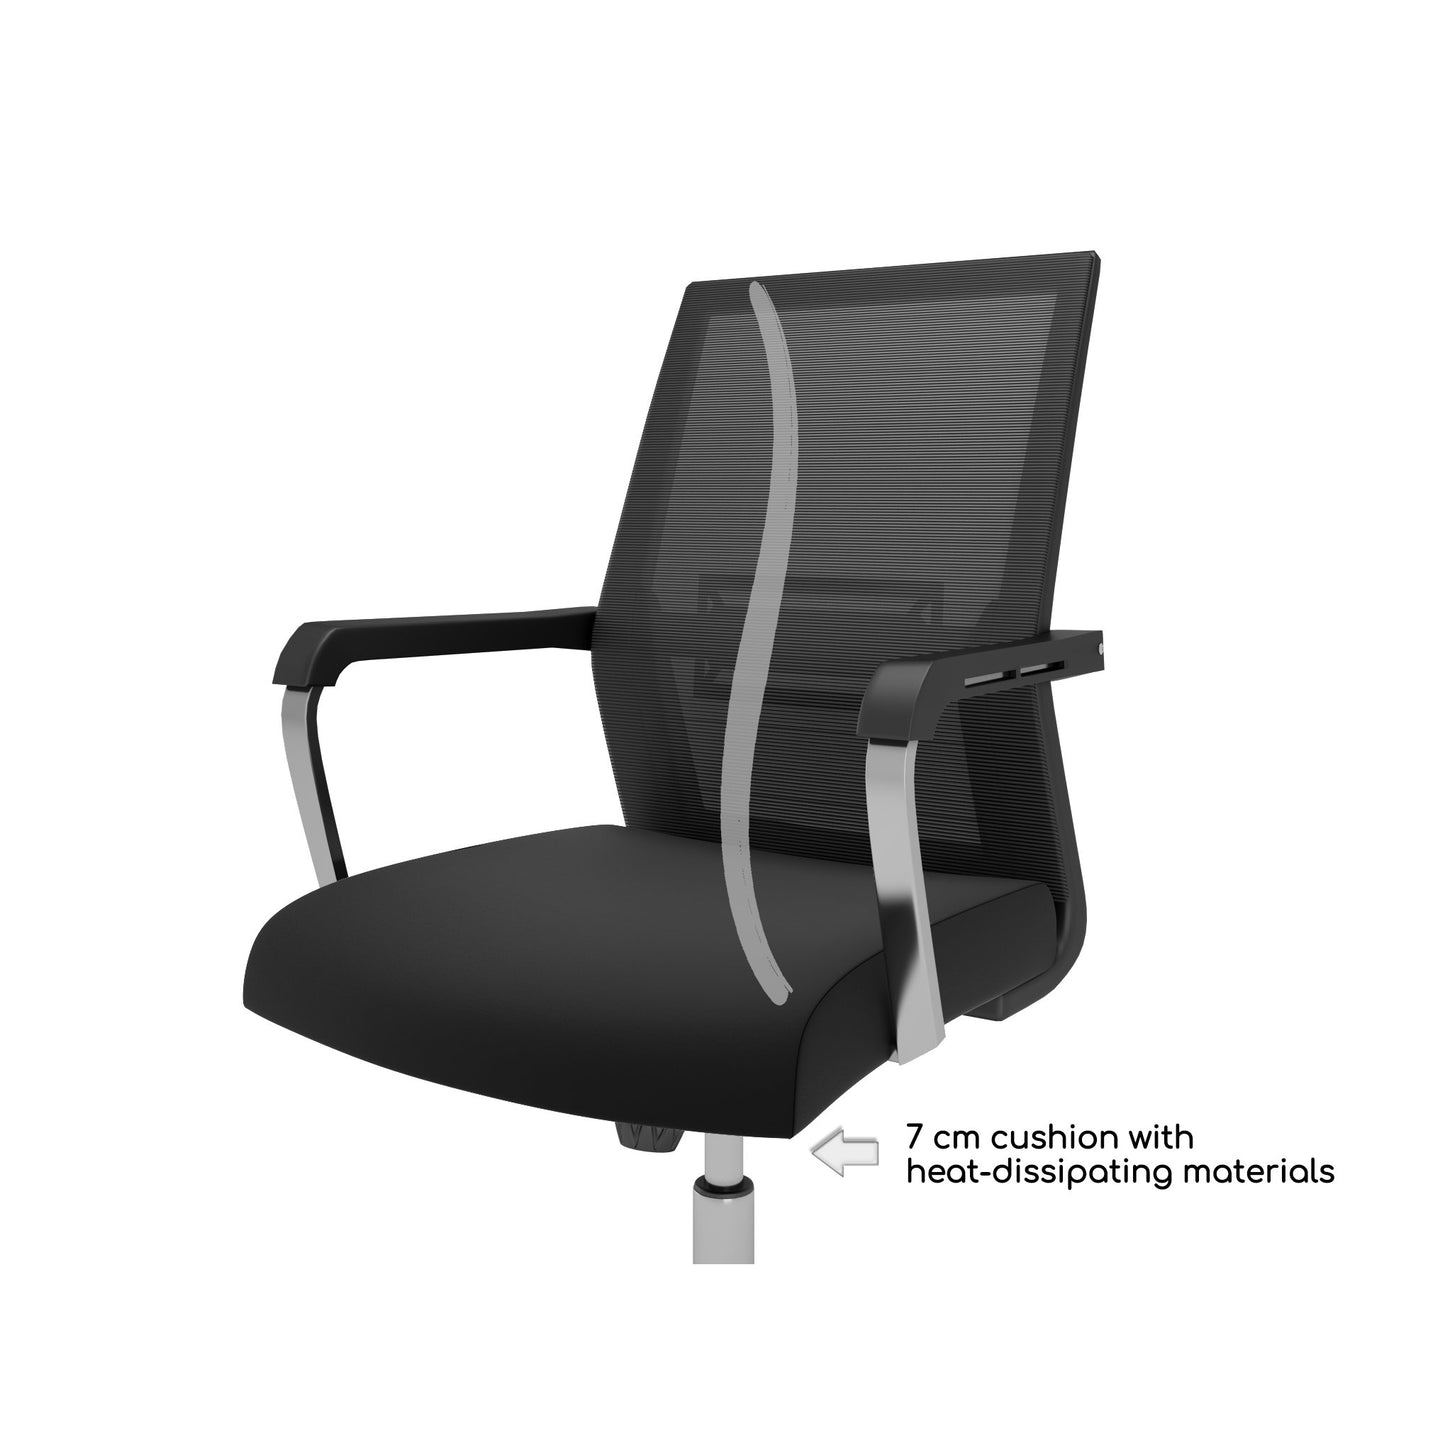 Chaise de bureau Nancy's Ocala - Chaise pivotante - Dossier inclinable - Maille - Ergonomique - Noir - Plastique - 55 x 56 x 98 - 107 cm